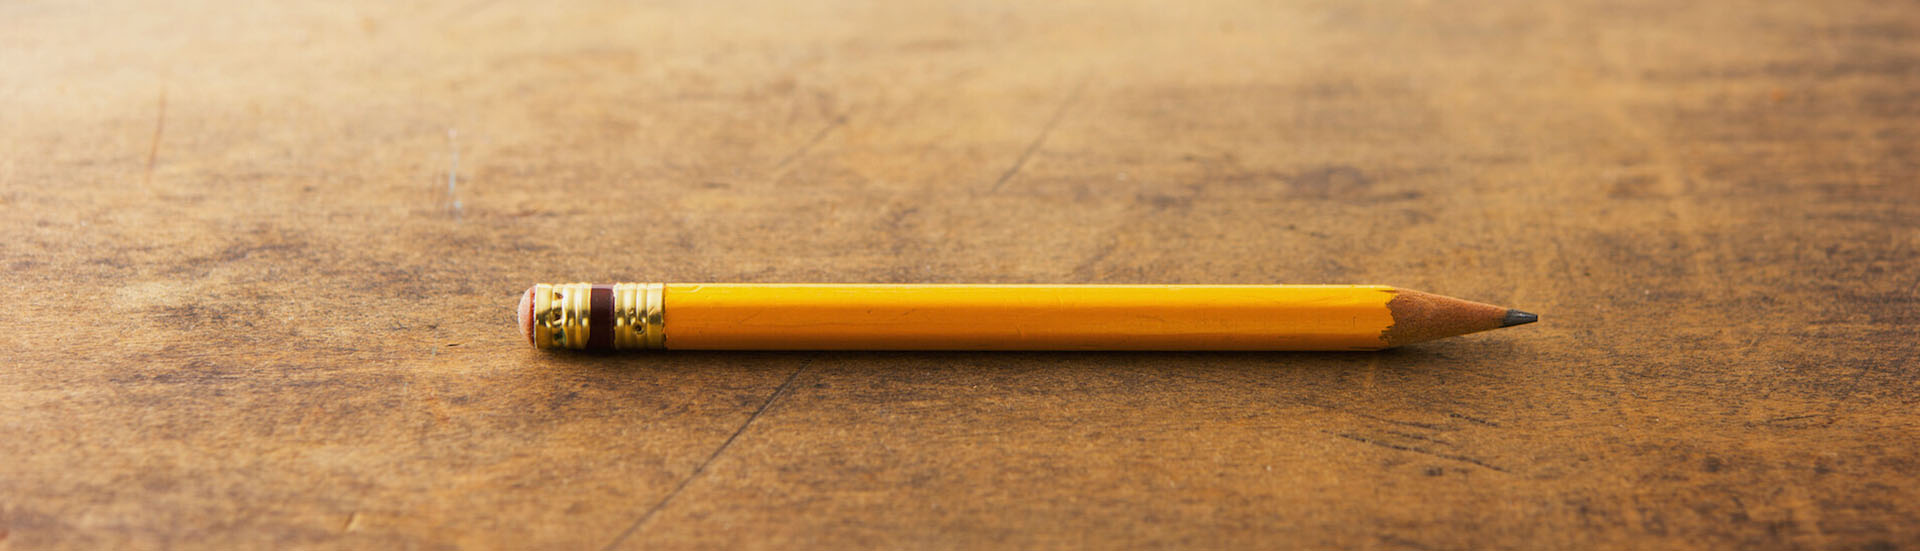 Pencil on desk